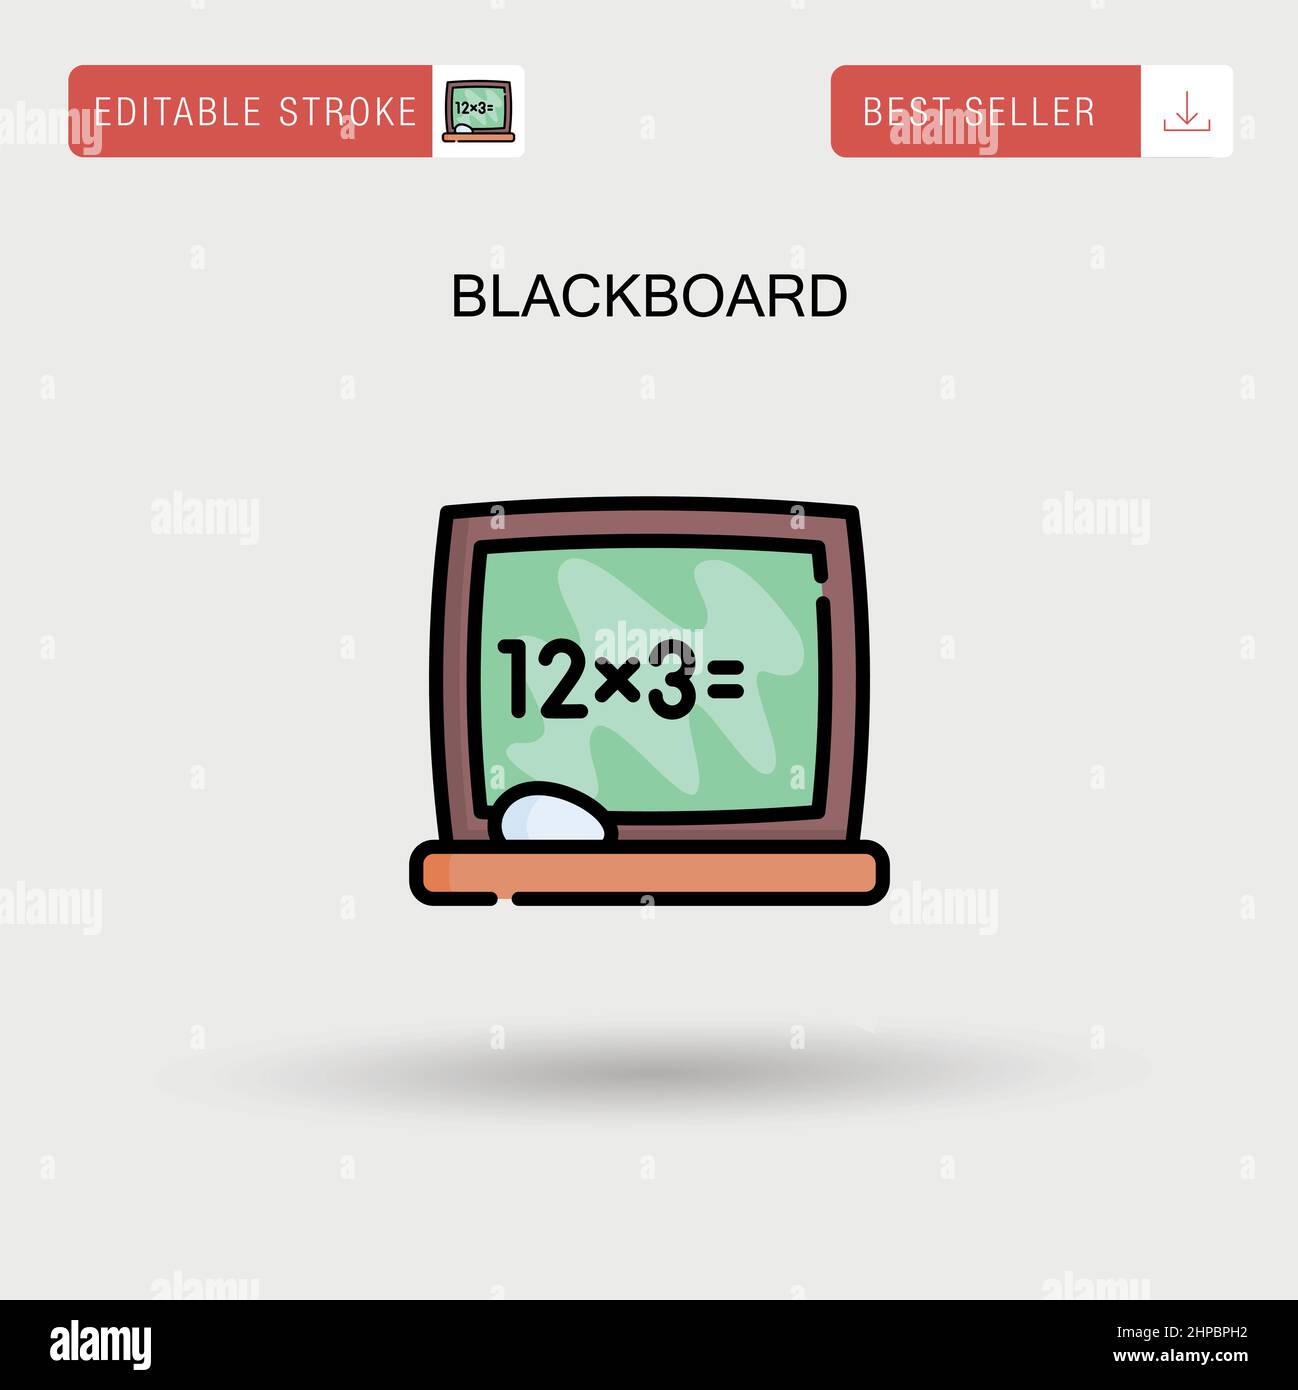 Blackboard Simple vector icon. Stock Vector